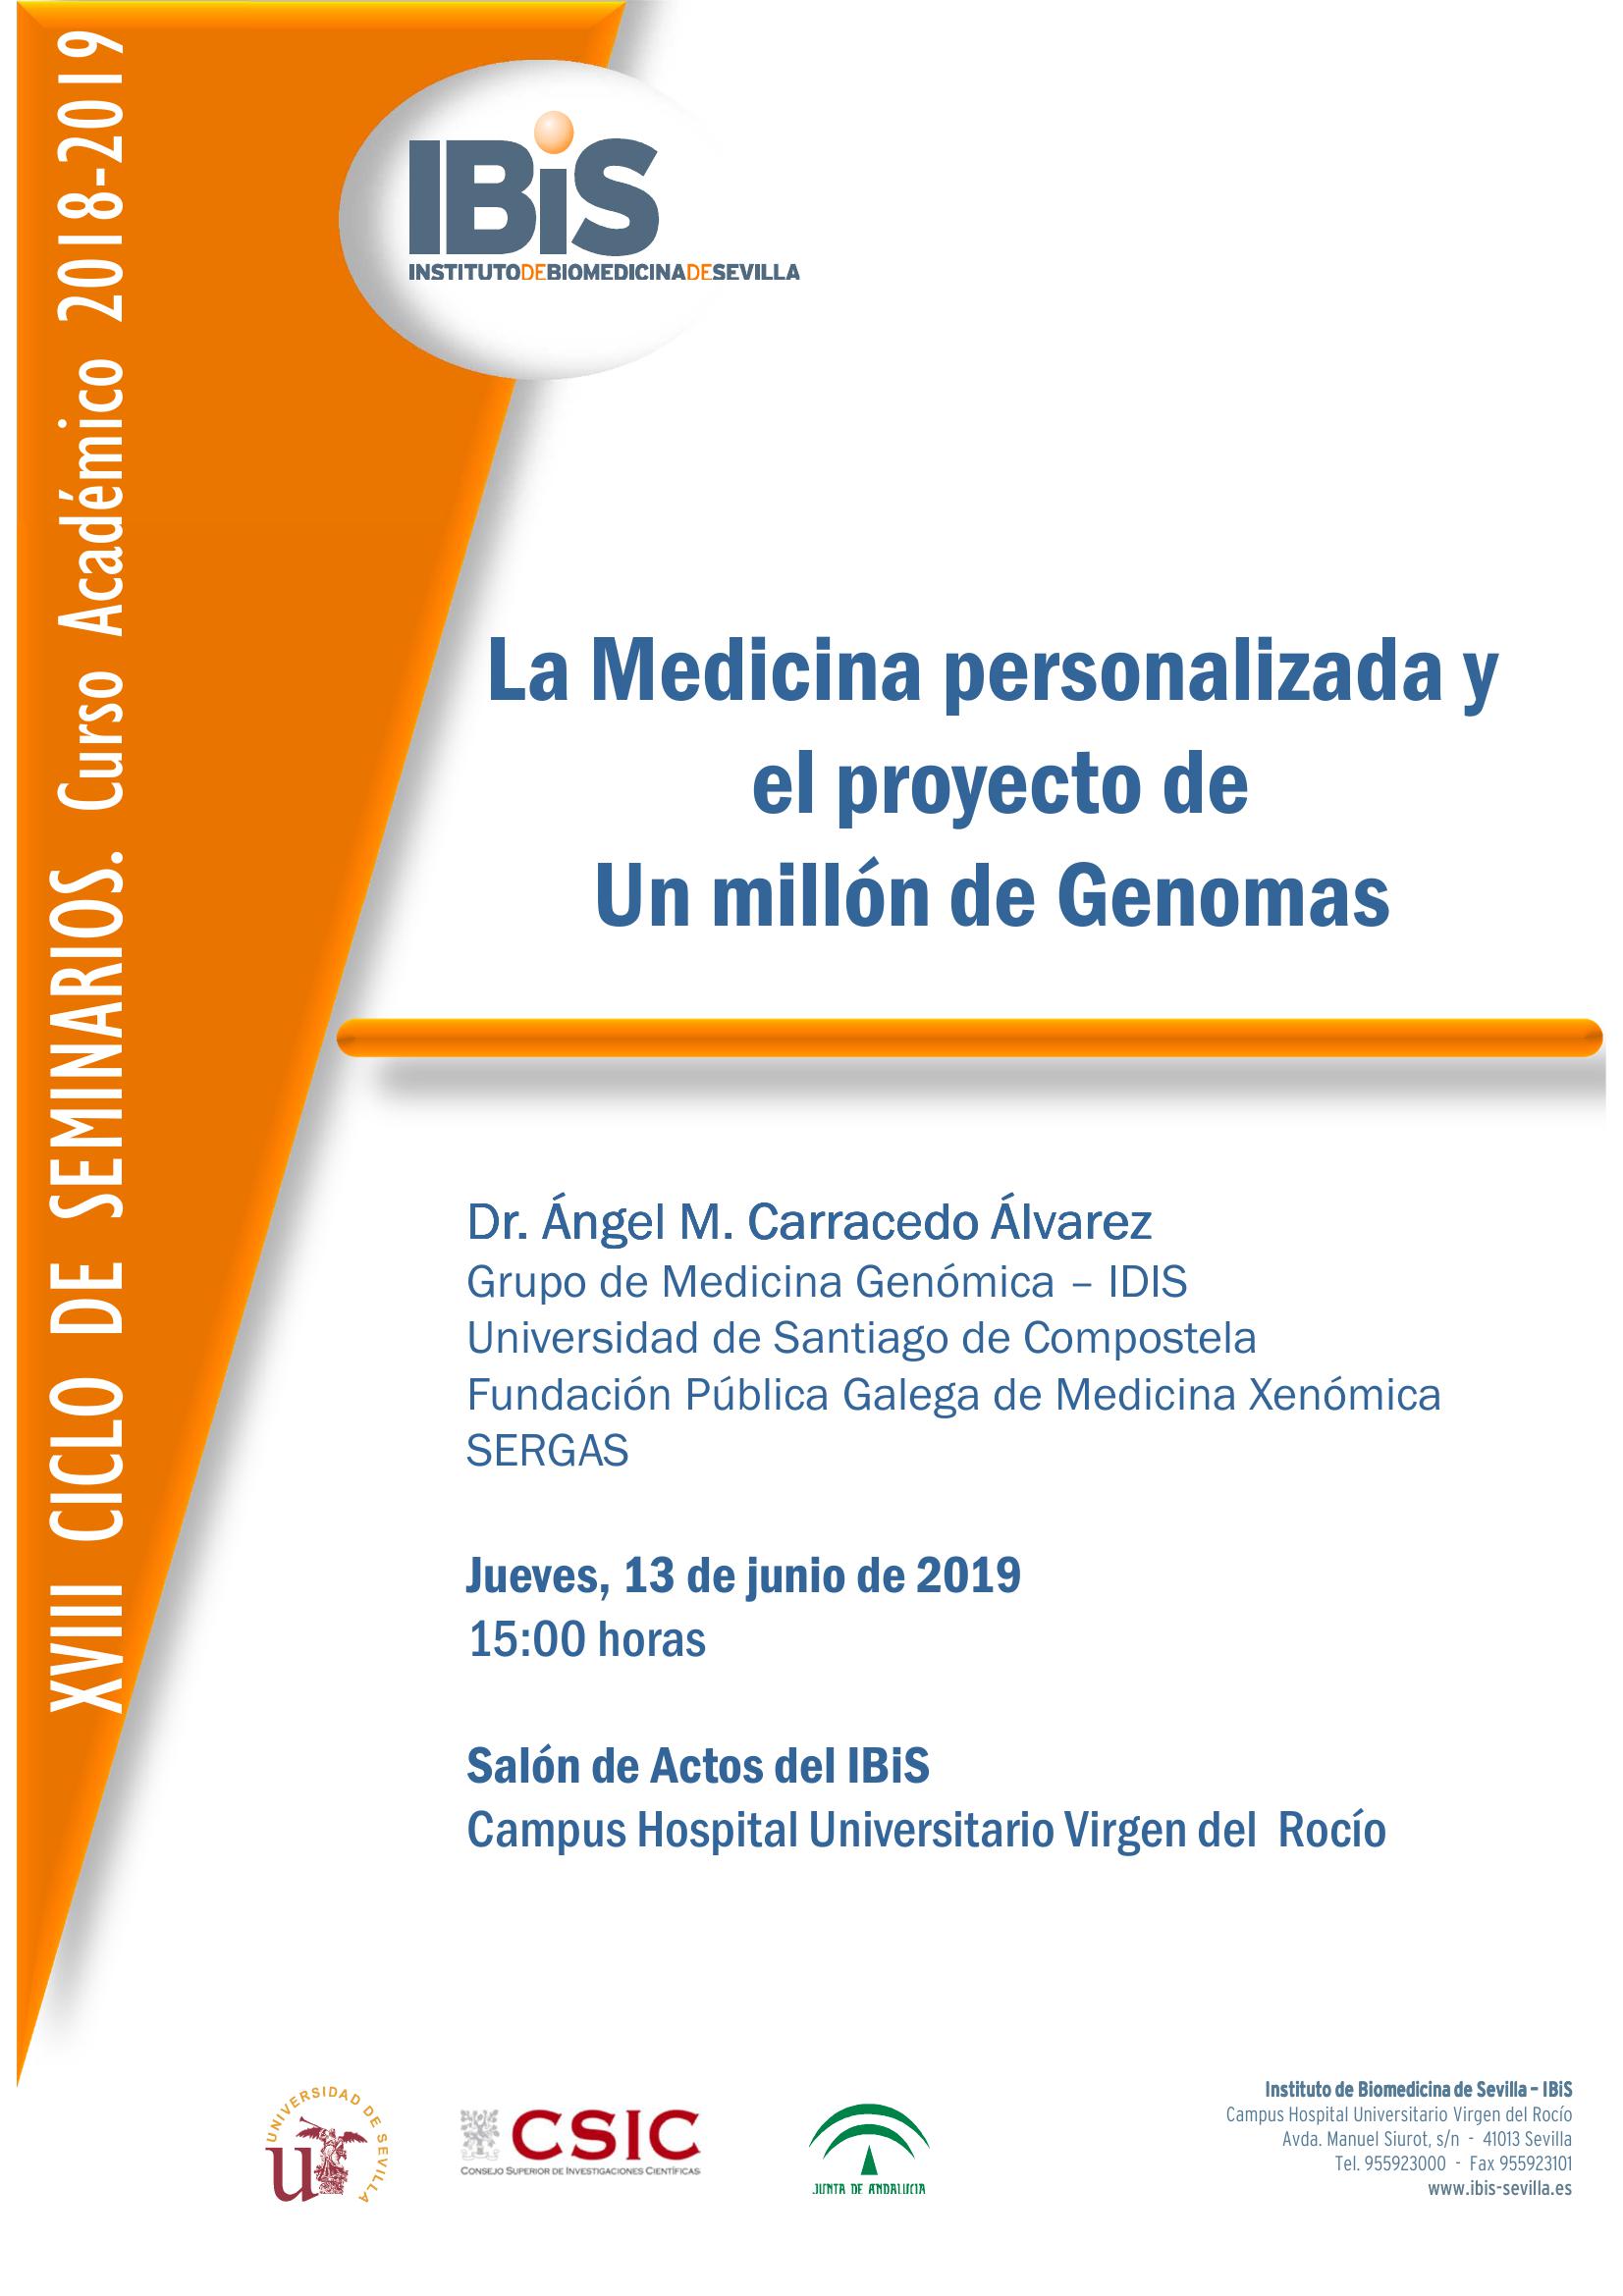 Poster: La Medicina personalizada y el proyecto de Un millón de Genomas